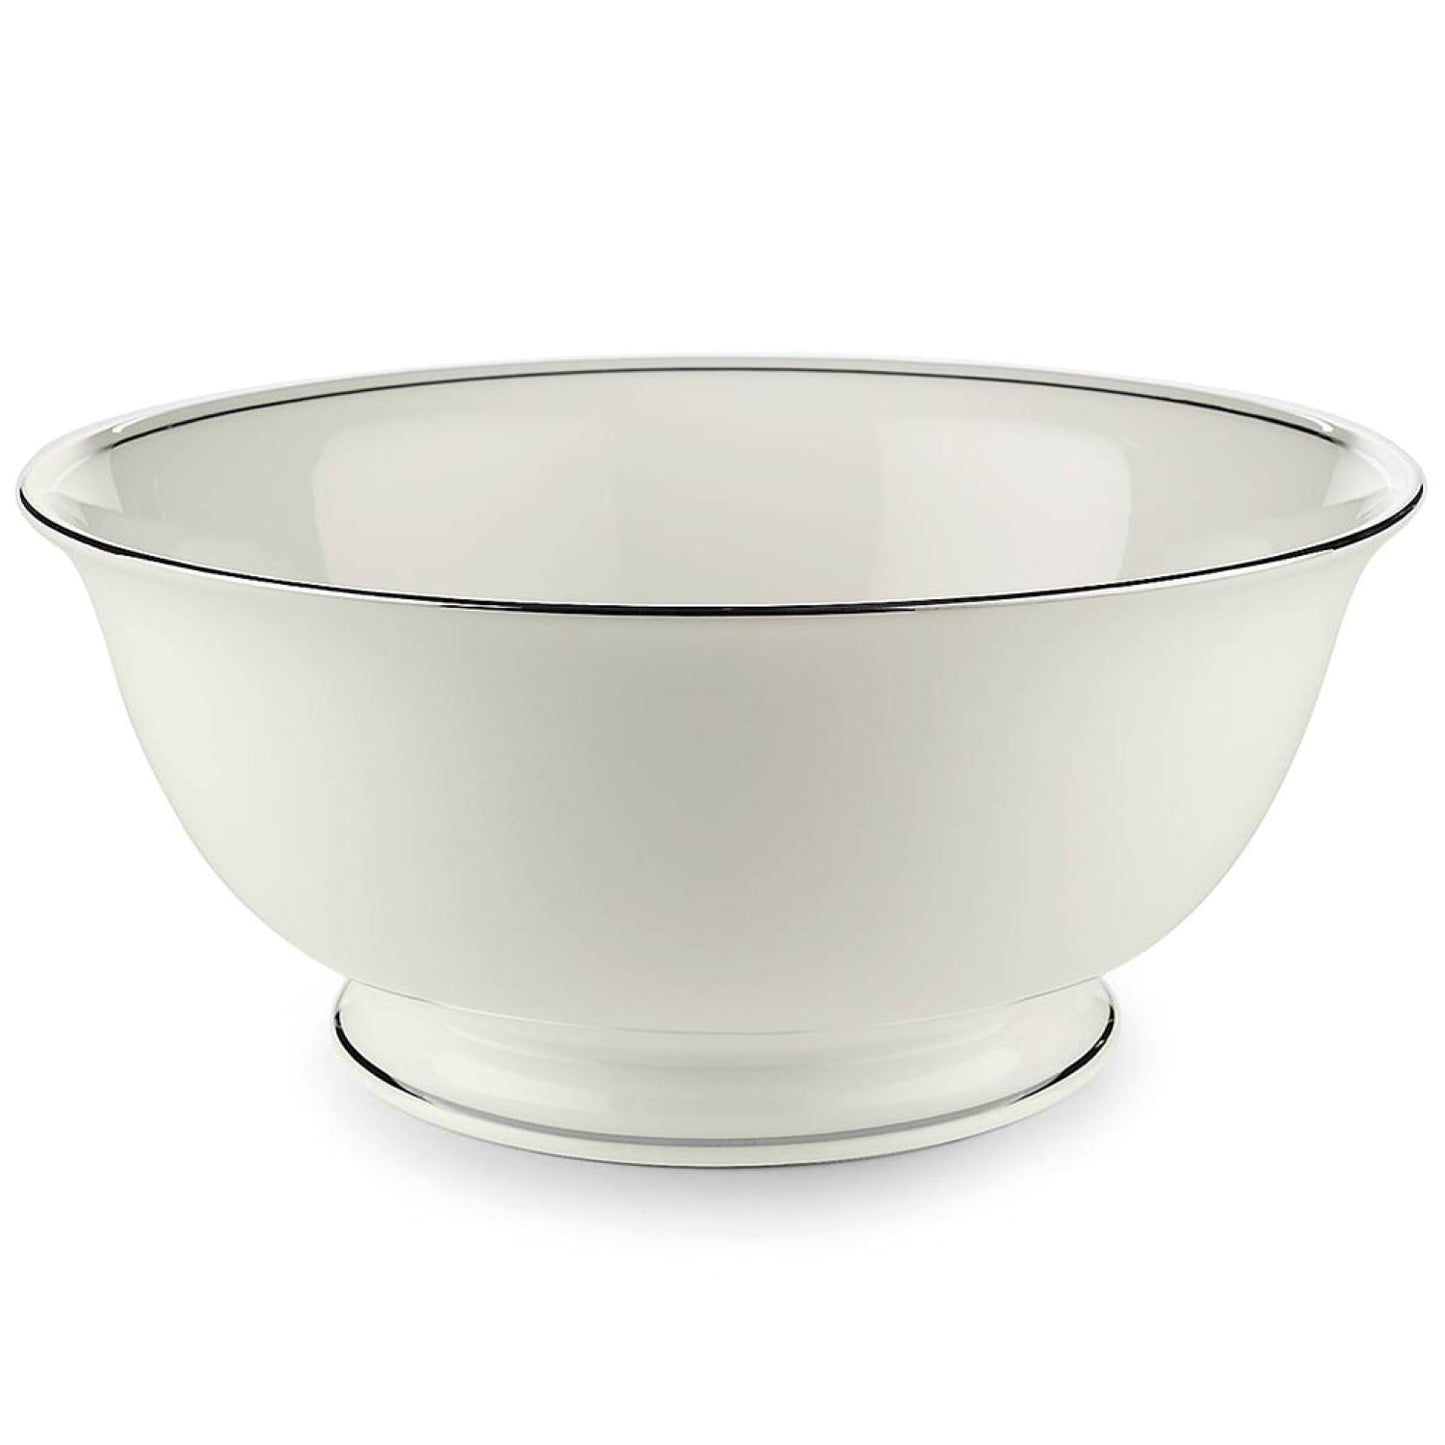 Lenox Federal Platinum Dinnerware Serving Bowl